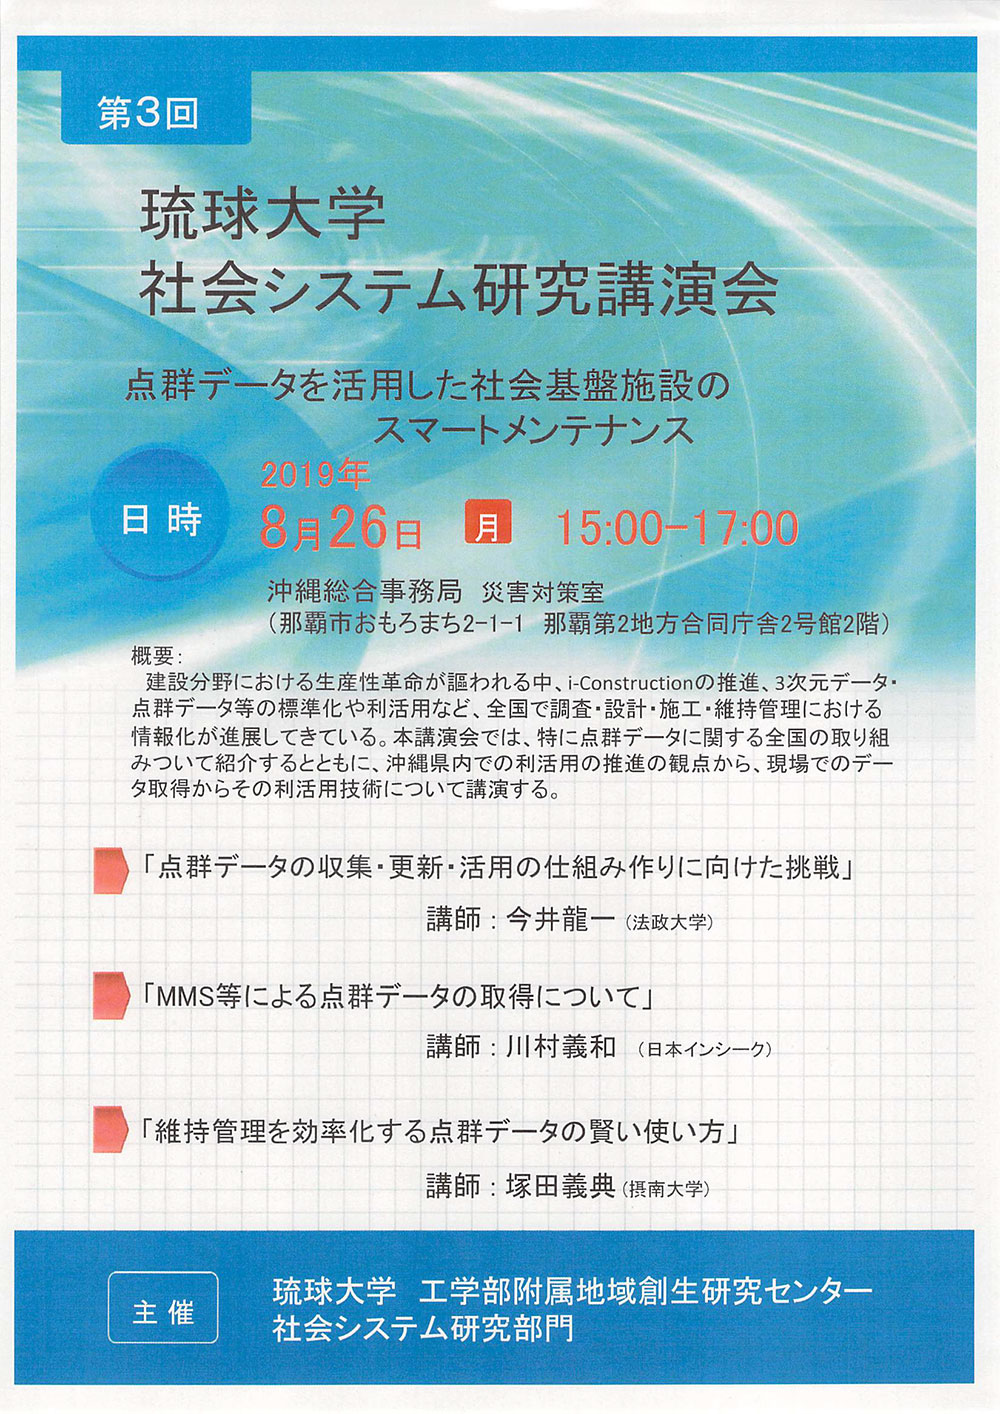 第3回 琉球大学 社会システム研究講演会「点群データを活用した社会基盤施設のスマートメンテナンス」